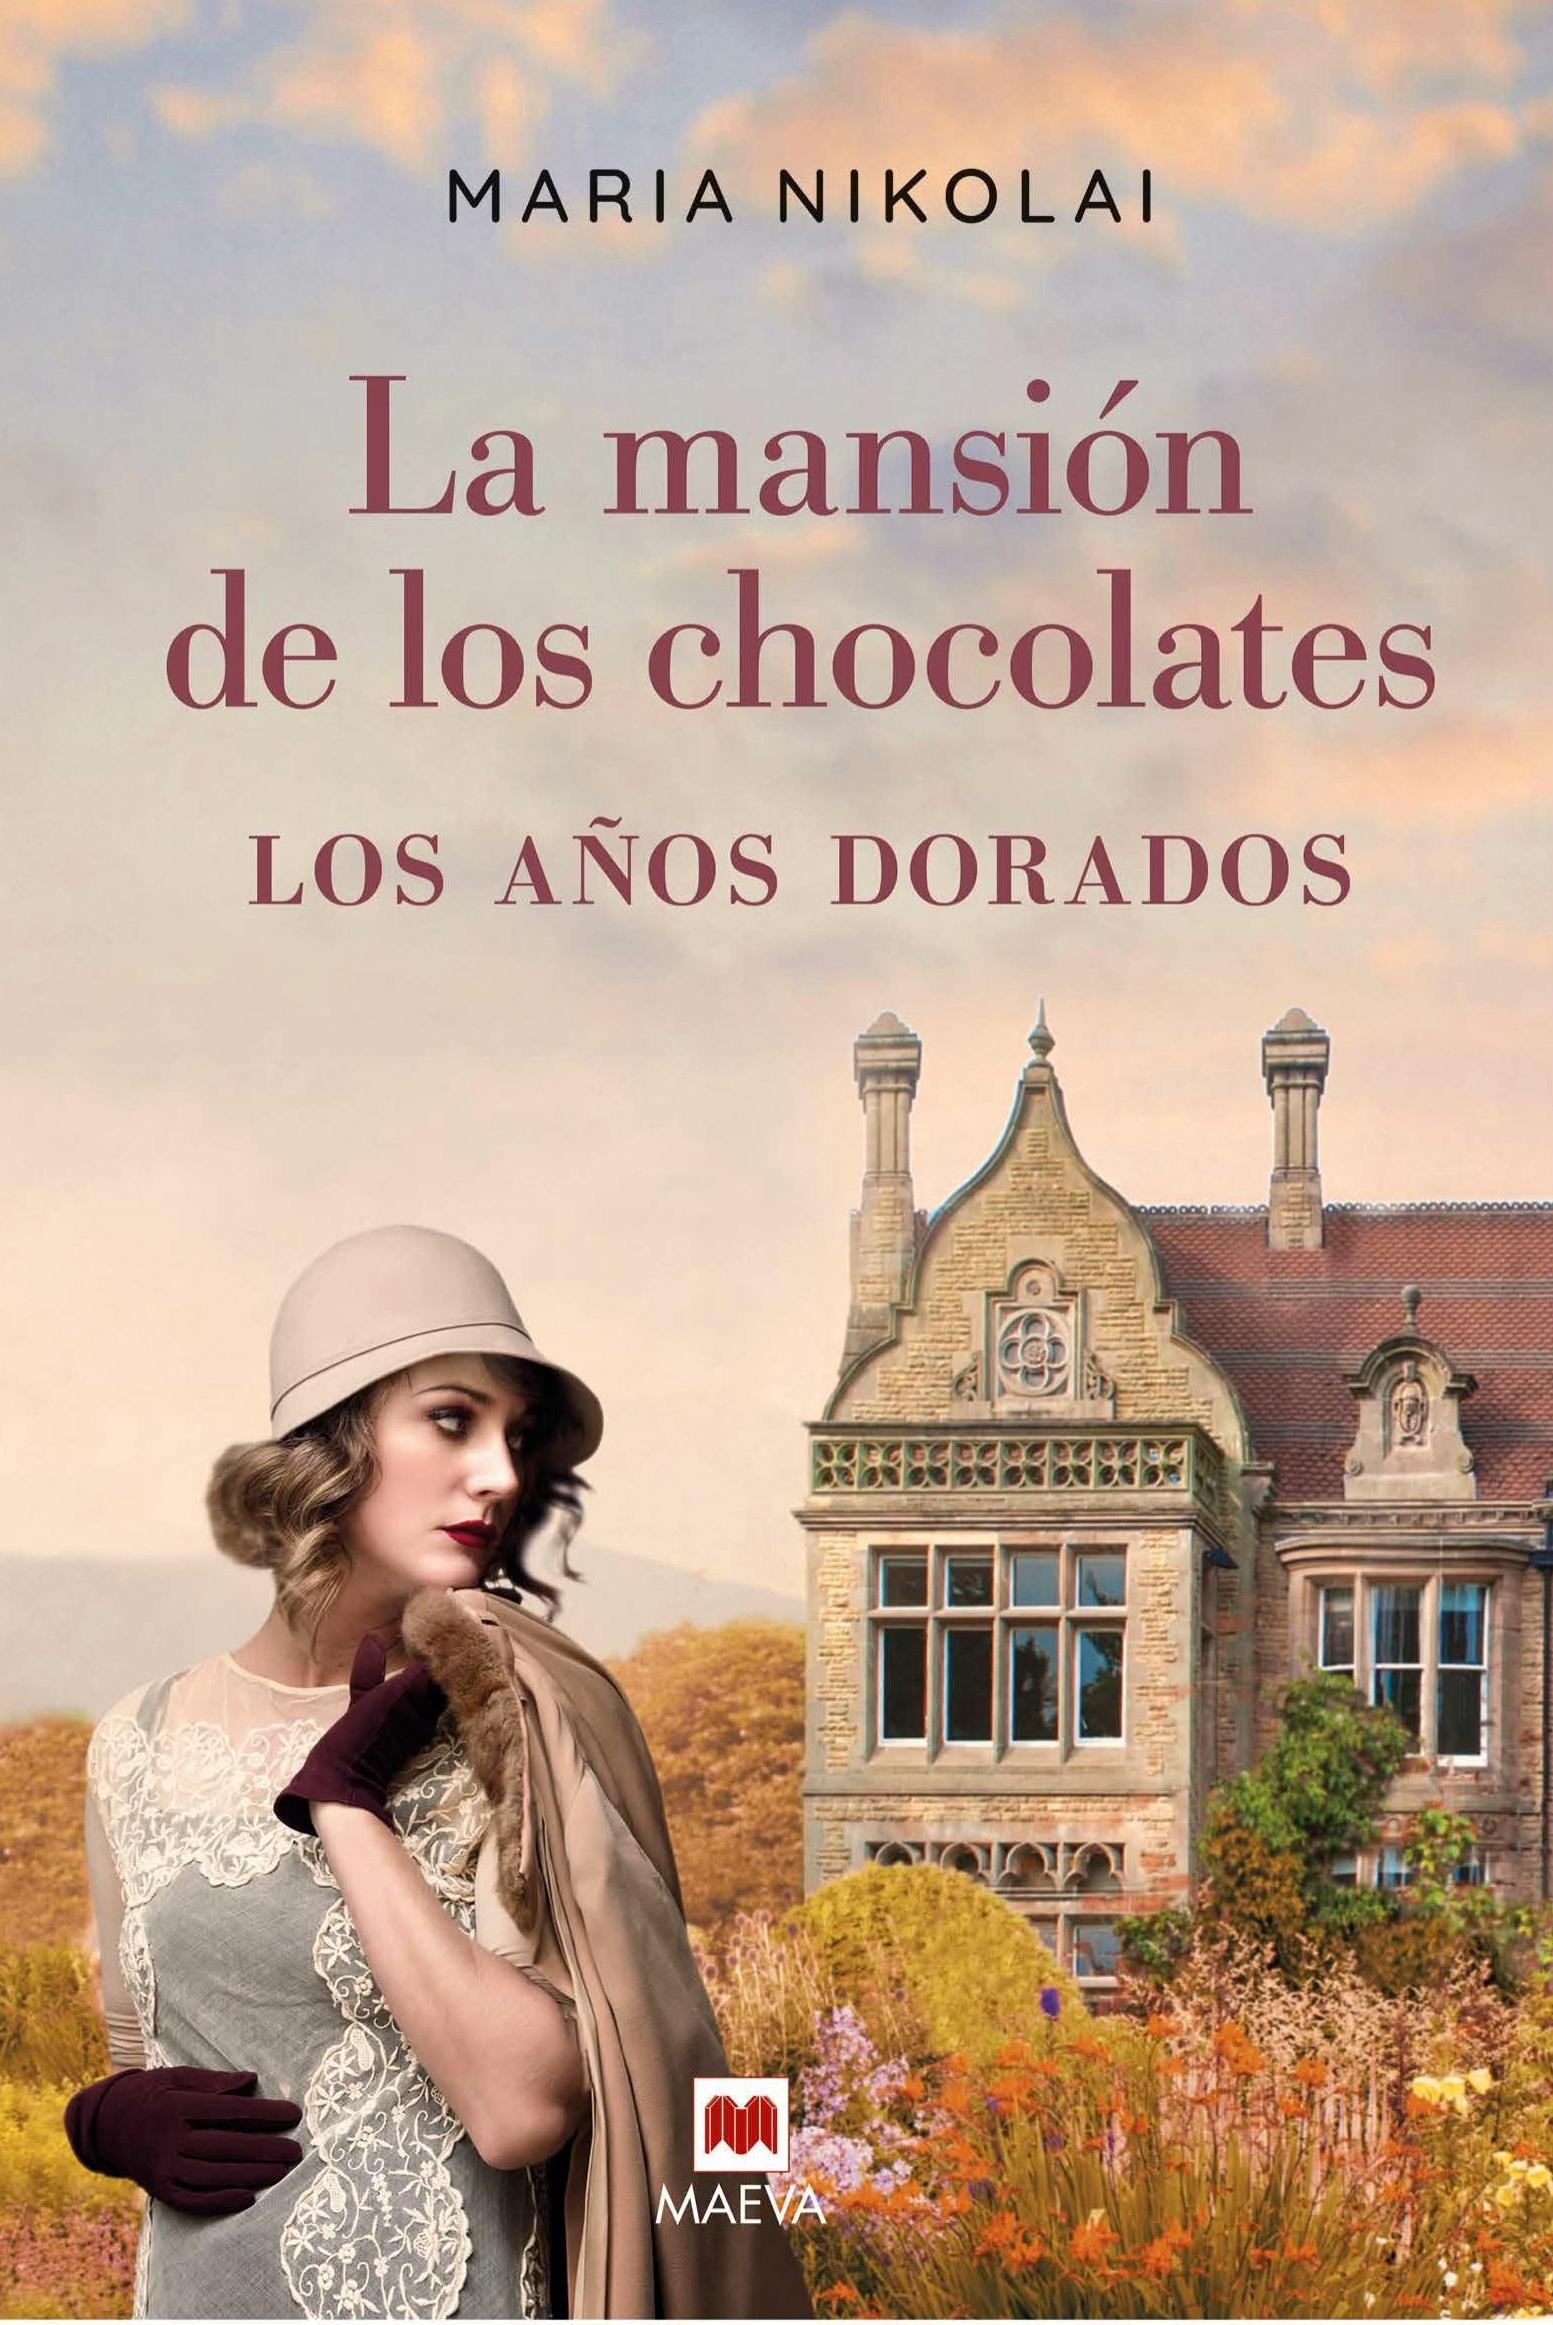 La mansión de los chocolates - Los años dorados "Tras el éxito de La mansión de los chocolates, llega una nueva entrega d"